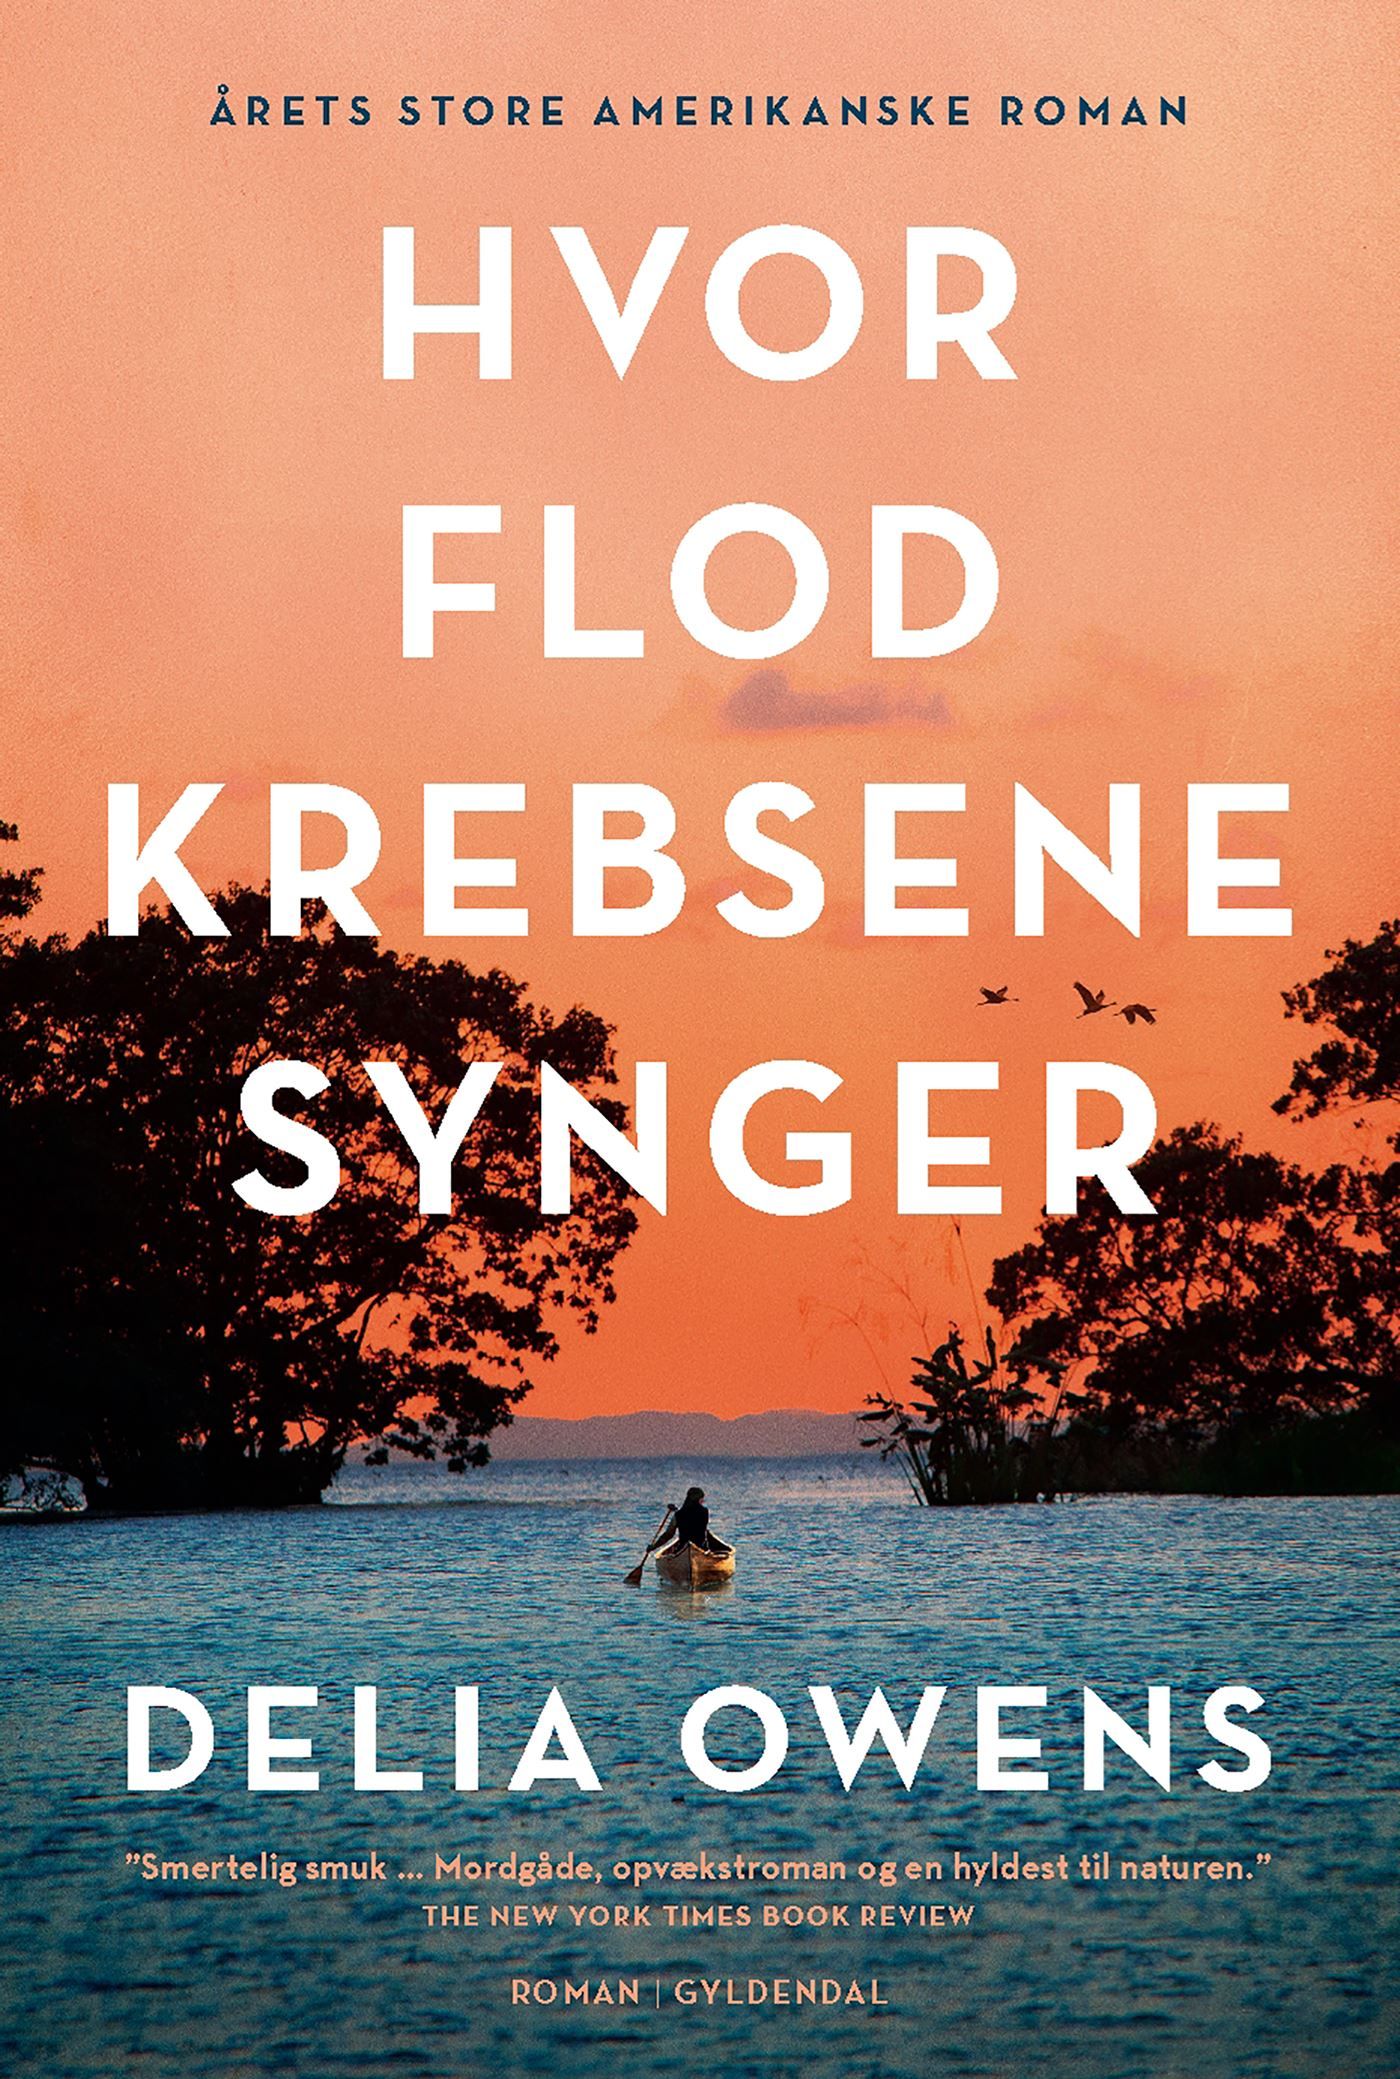 Hvor flodkrebsene synger, e-bok av Delia Owens